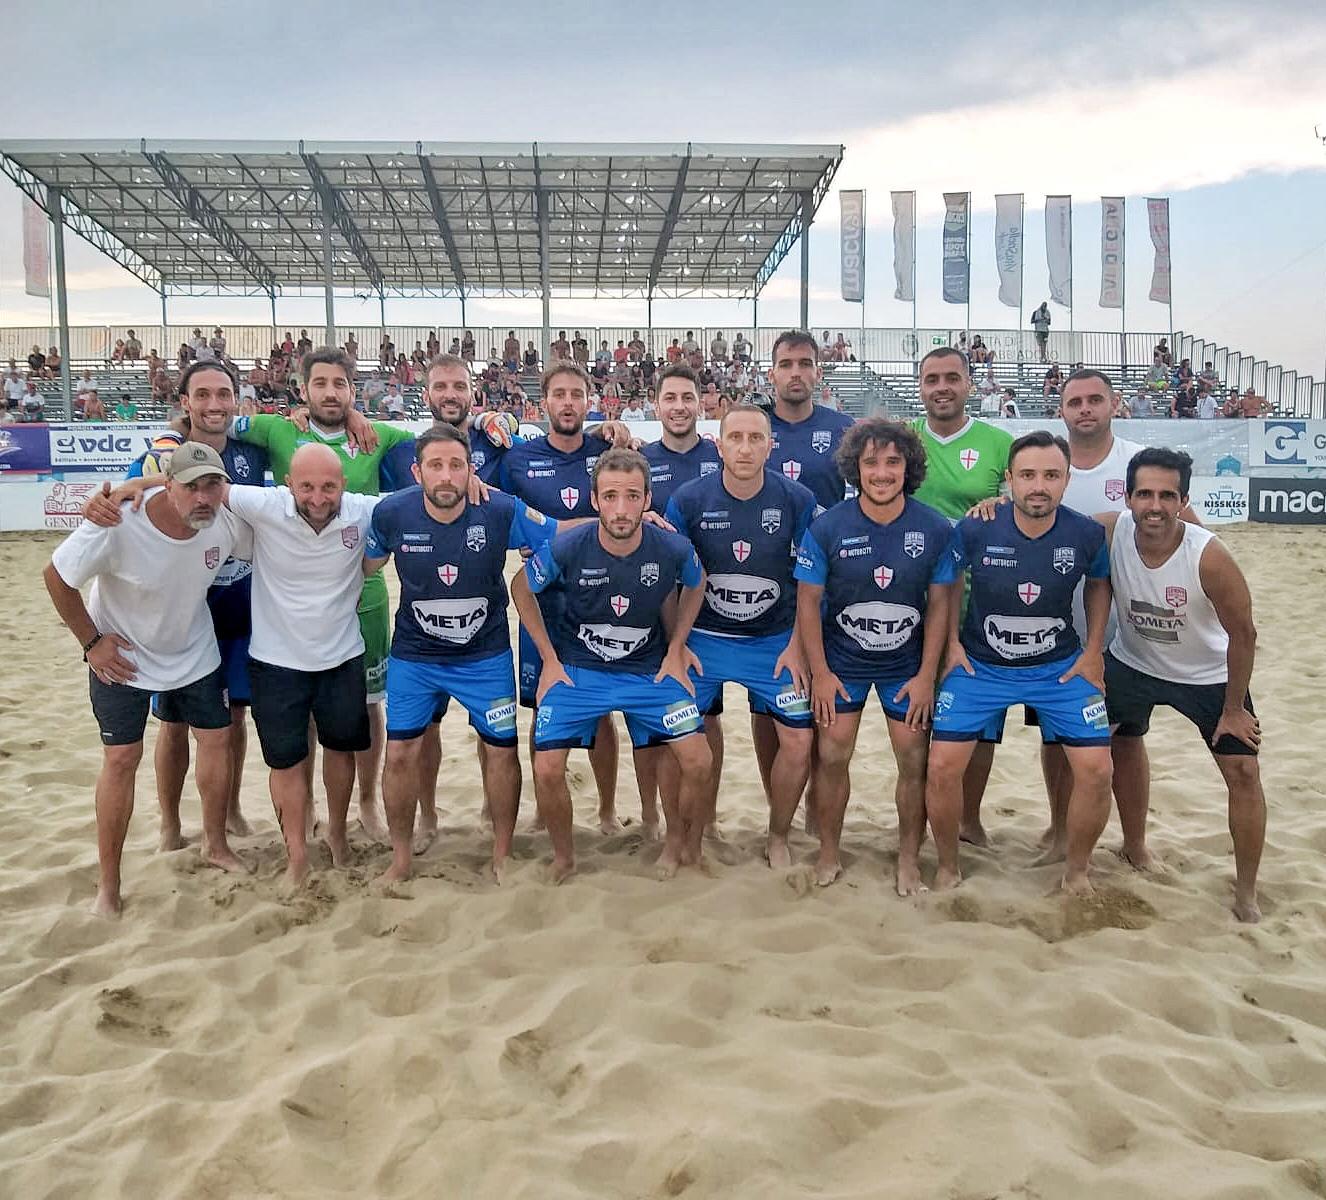 Beach Soccer, Genova schianta Bari 5-2: la salvezza è in cassaforte